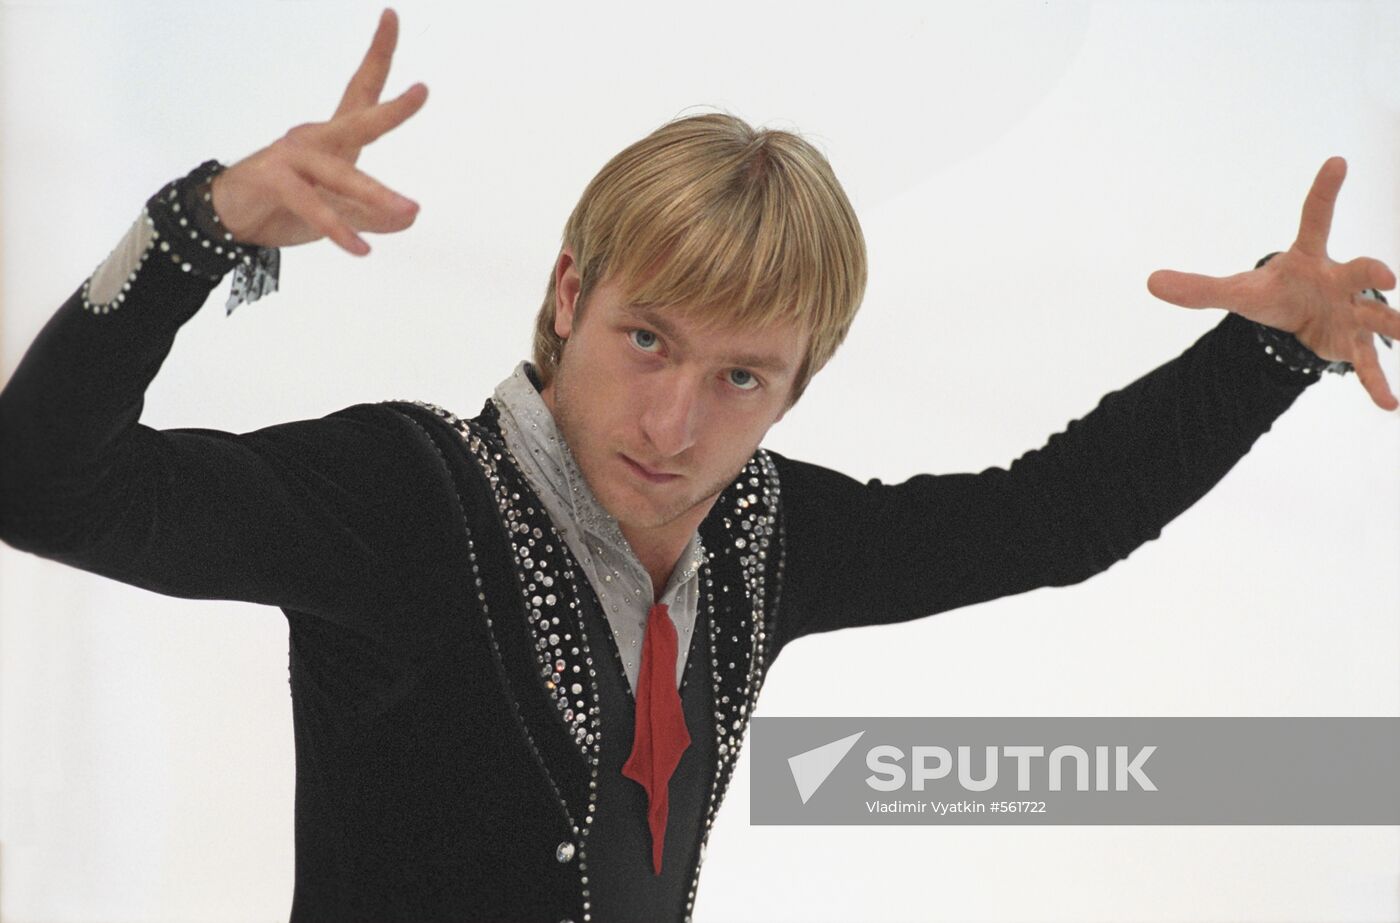 Russian figure skating ace Yevgeny Plyushchenko